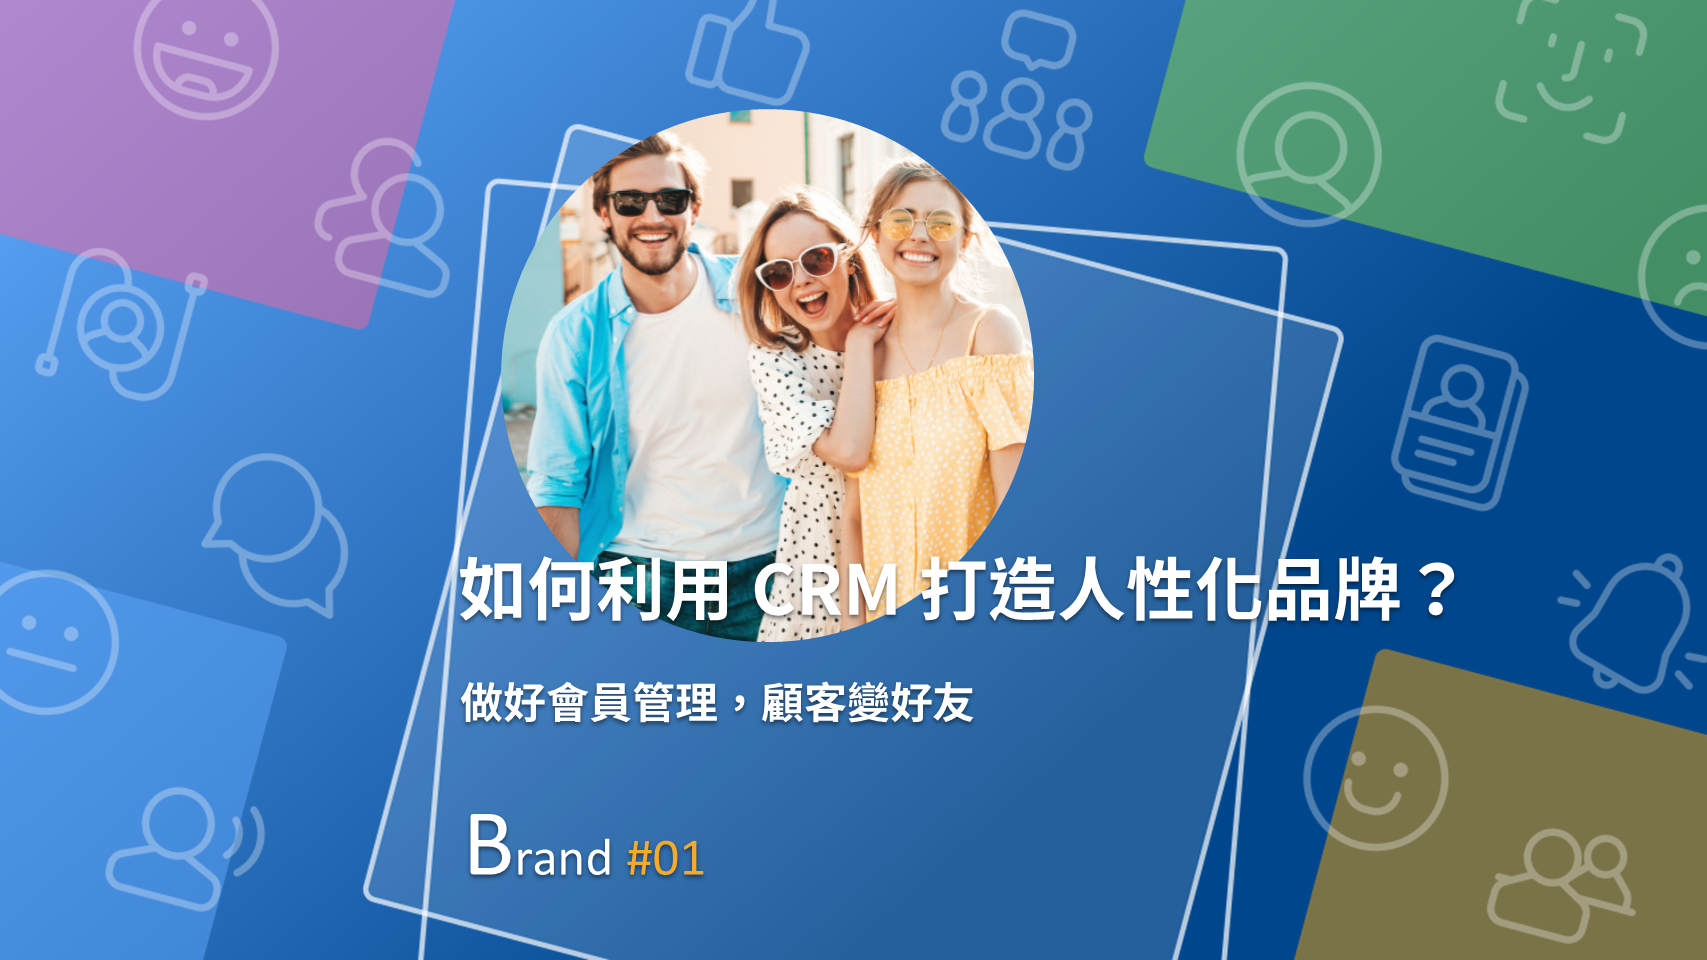 一個好的 CRM 系統，能幫助你從三個層面把消費者變成好朋友。